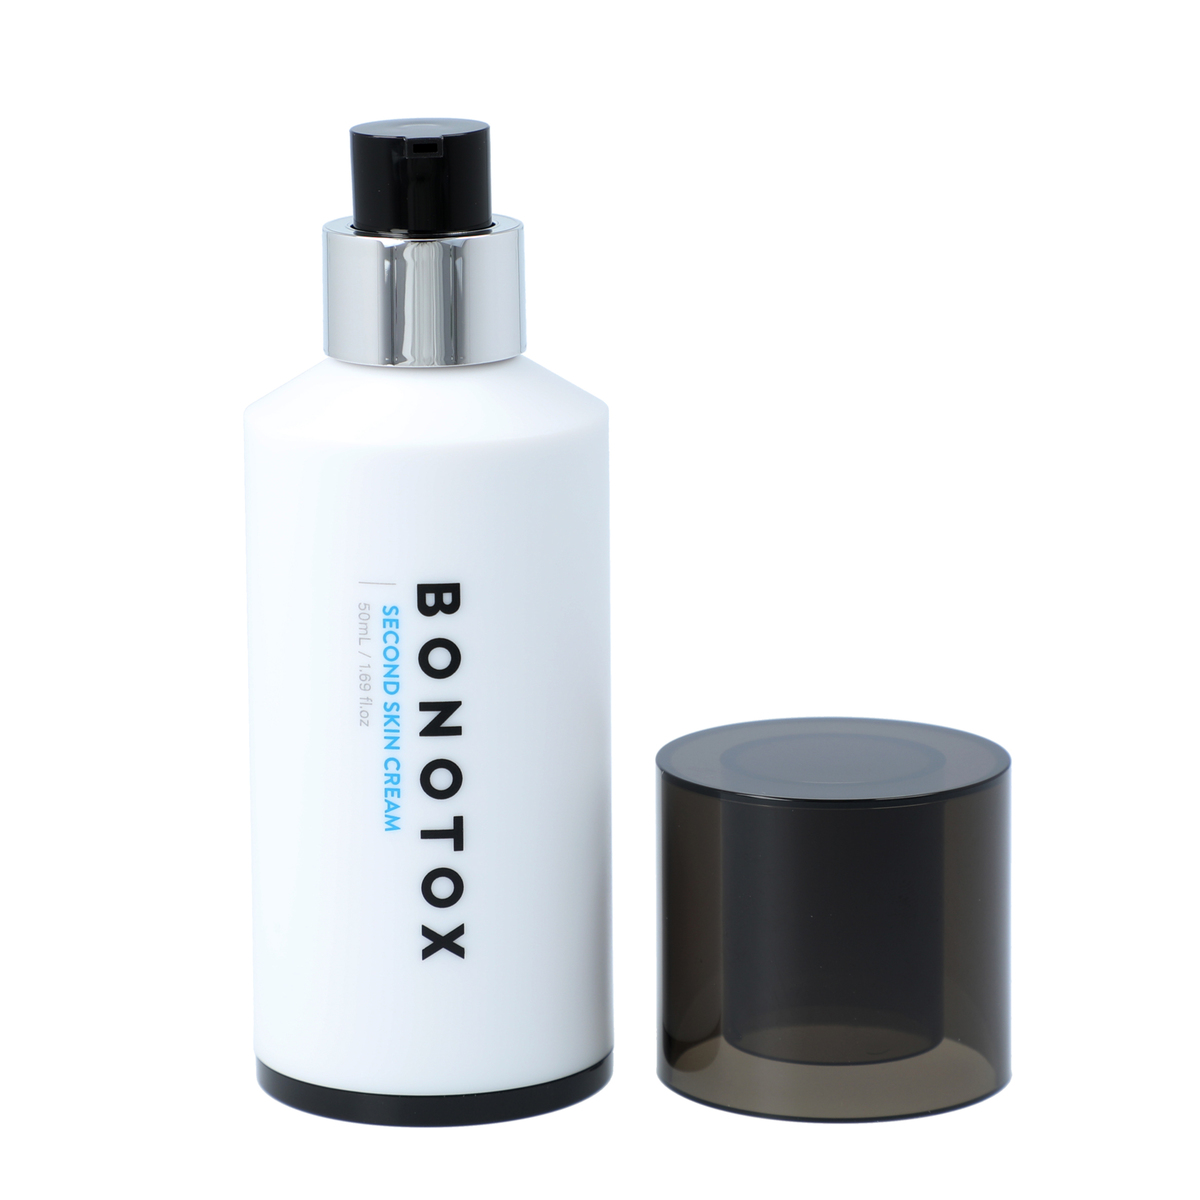 BONOTOX second skin cream